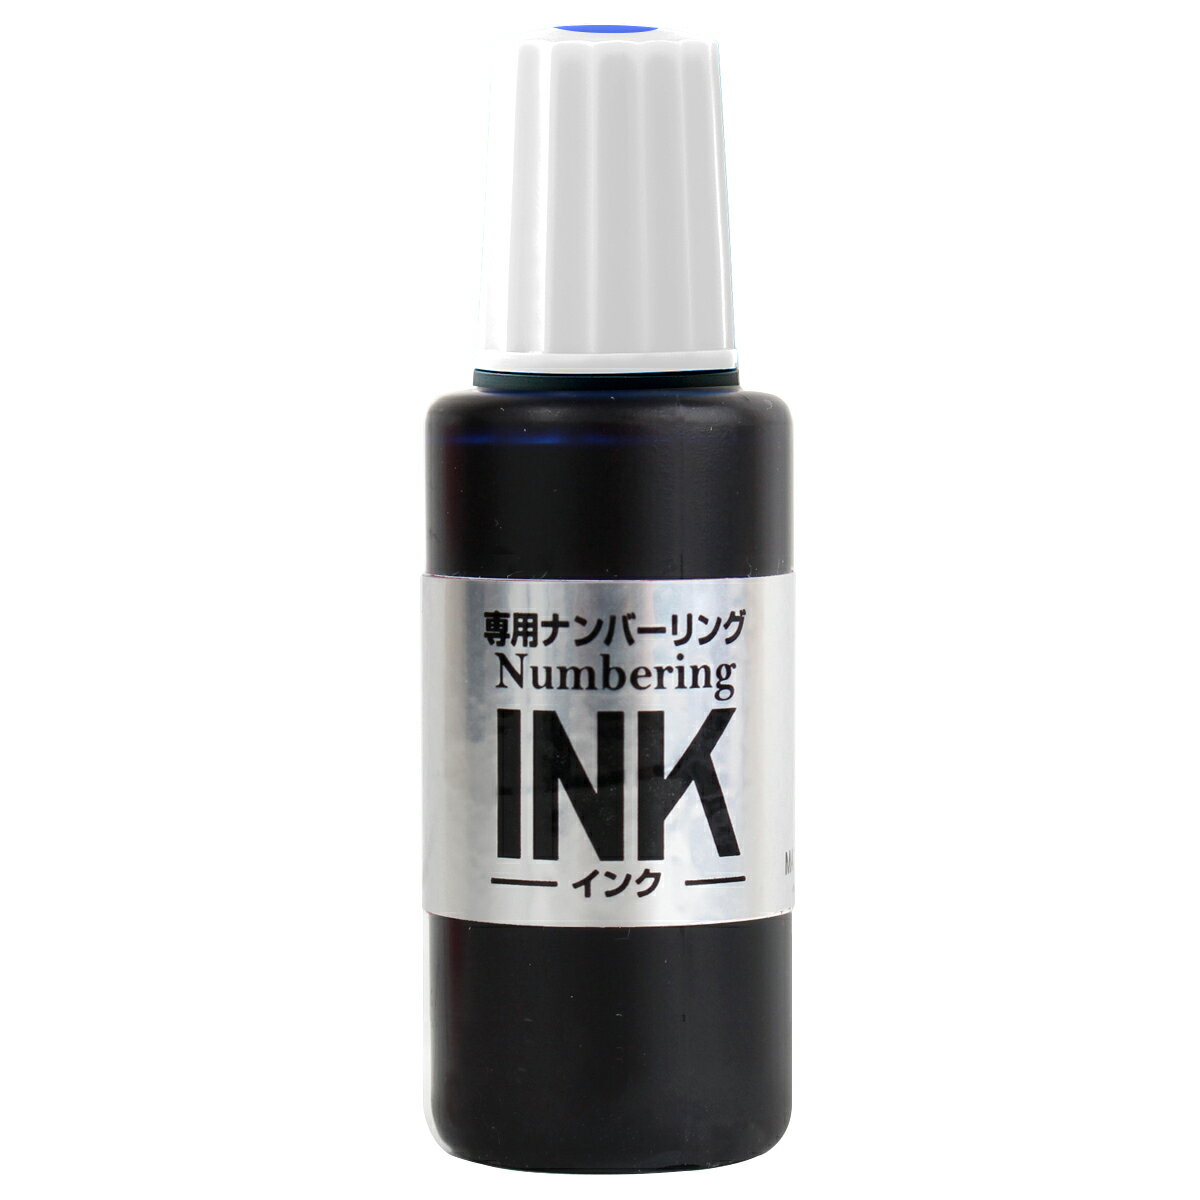 【PLUS】 ナンバーリング用インク ブルー IJ-900(30797) プラス